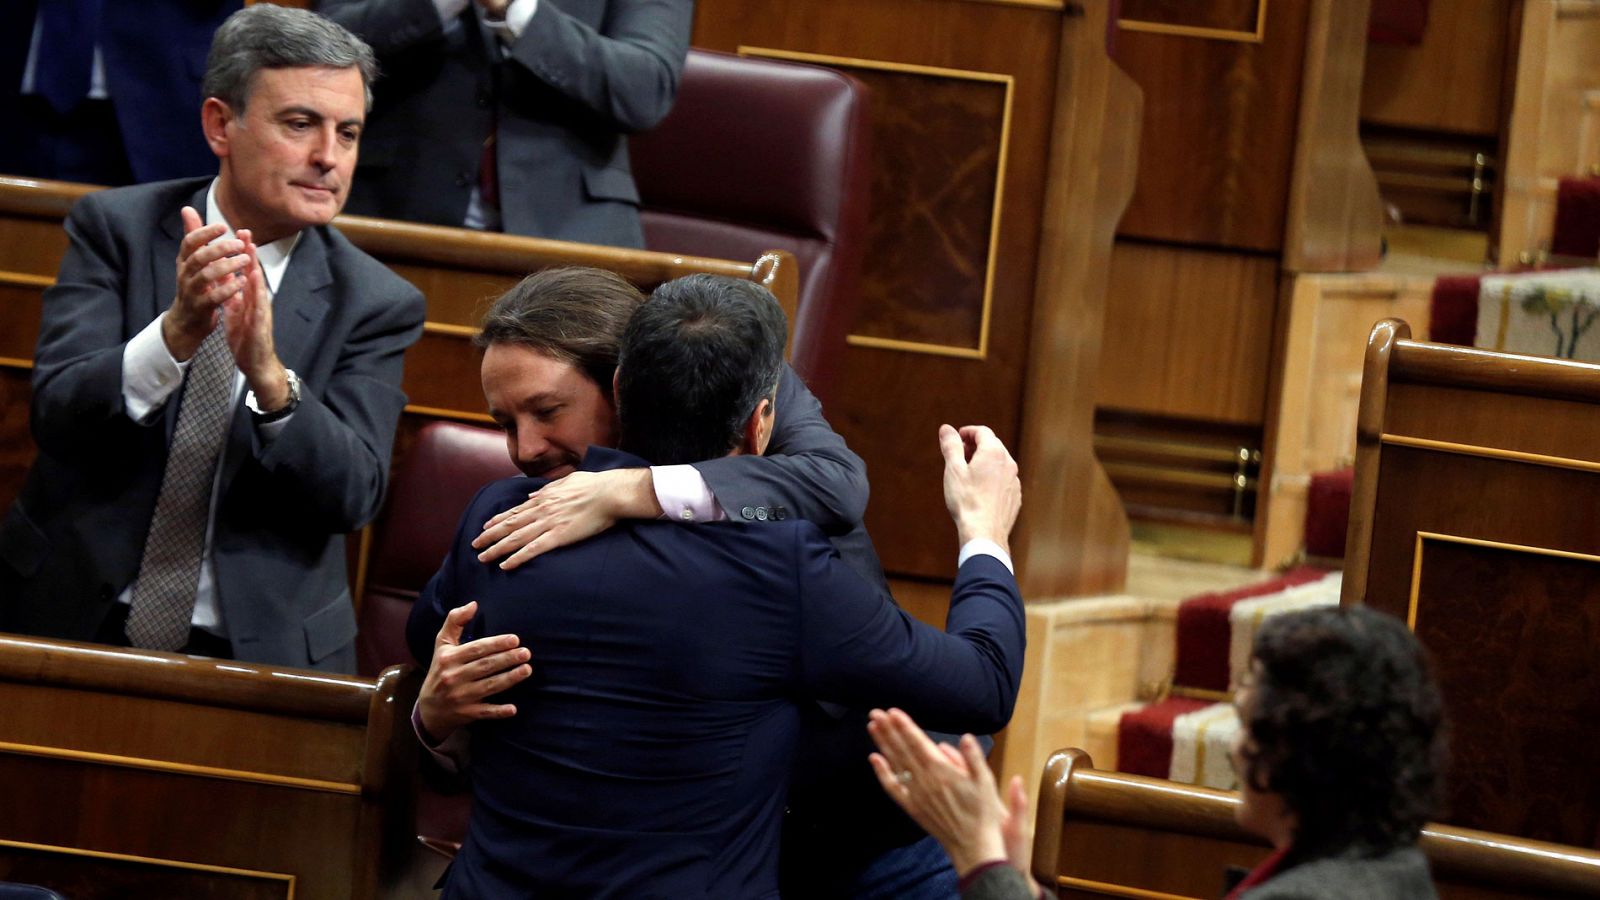 Investidura: Buena sintonía entre Sánchez e Iglesias durante la primera jornada del Pleno de Investidura